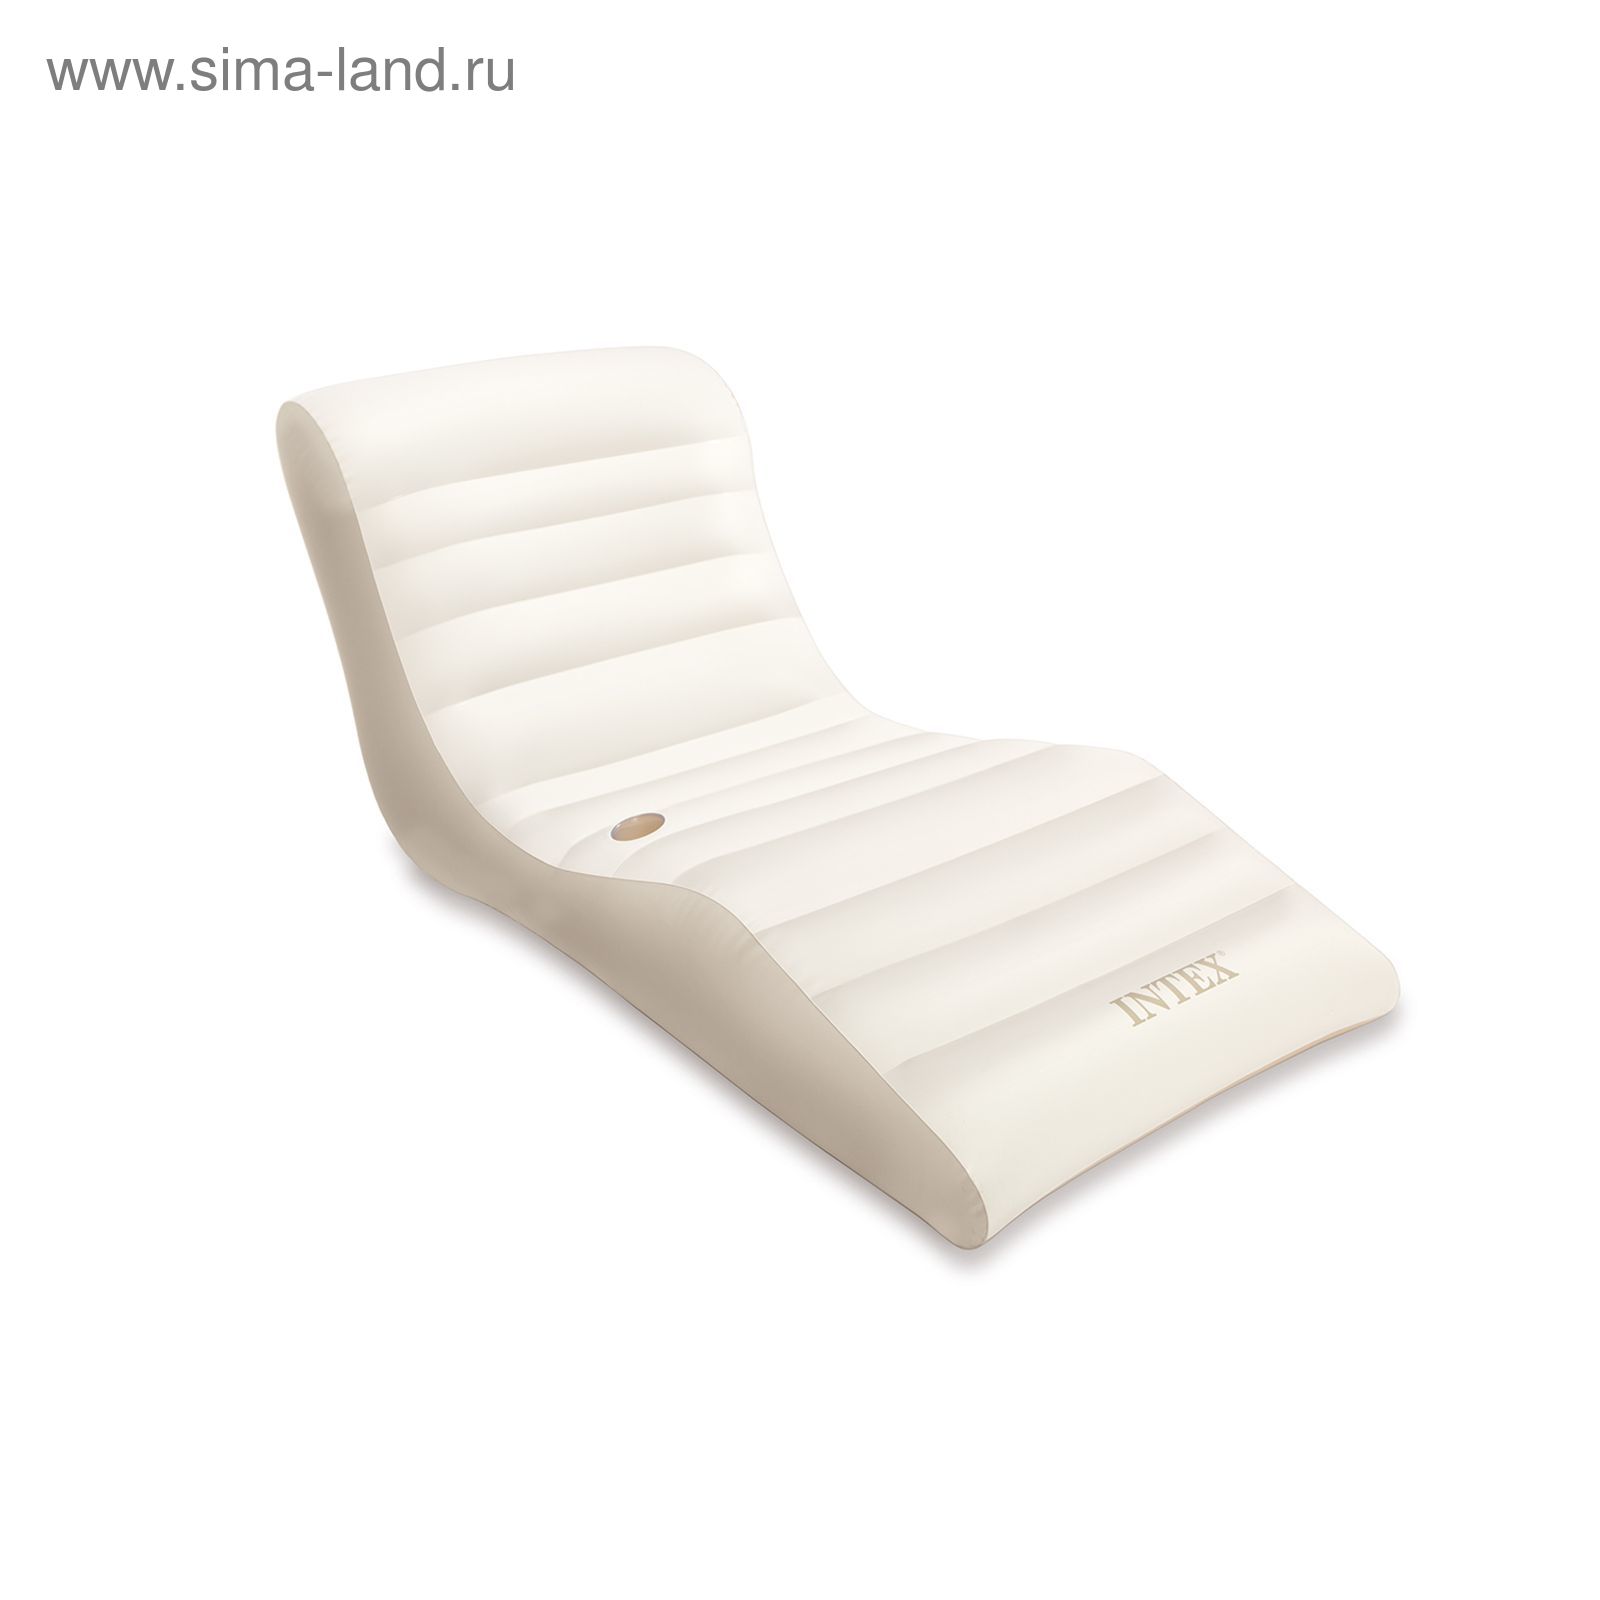 Кресло-шезлонг для плавания "Волна" 193 х 102 см